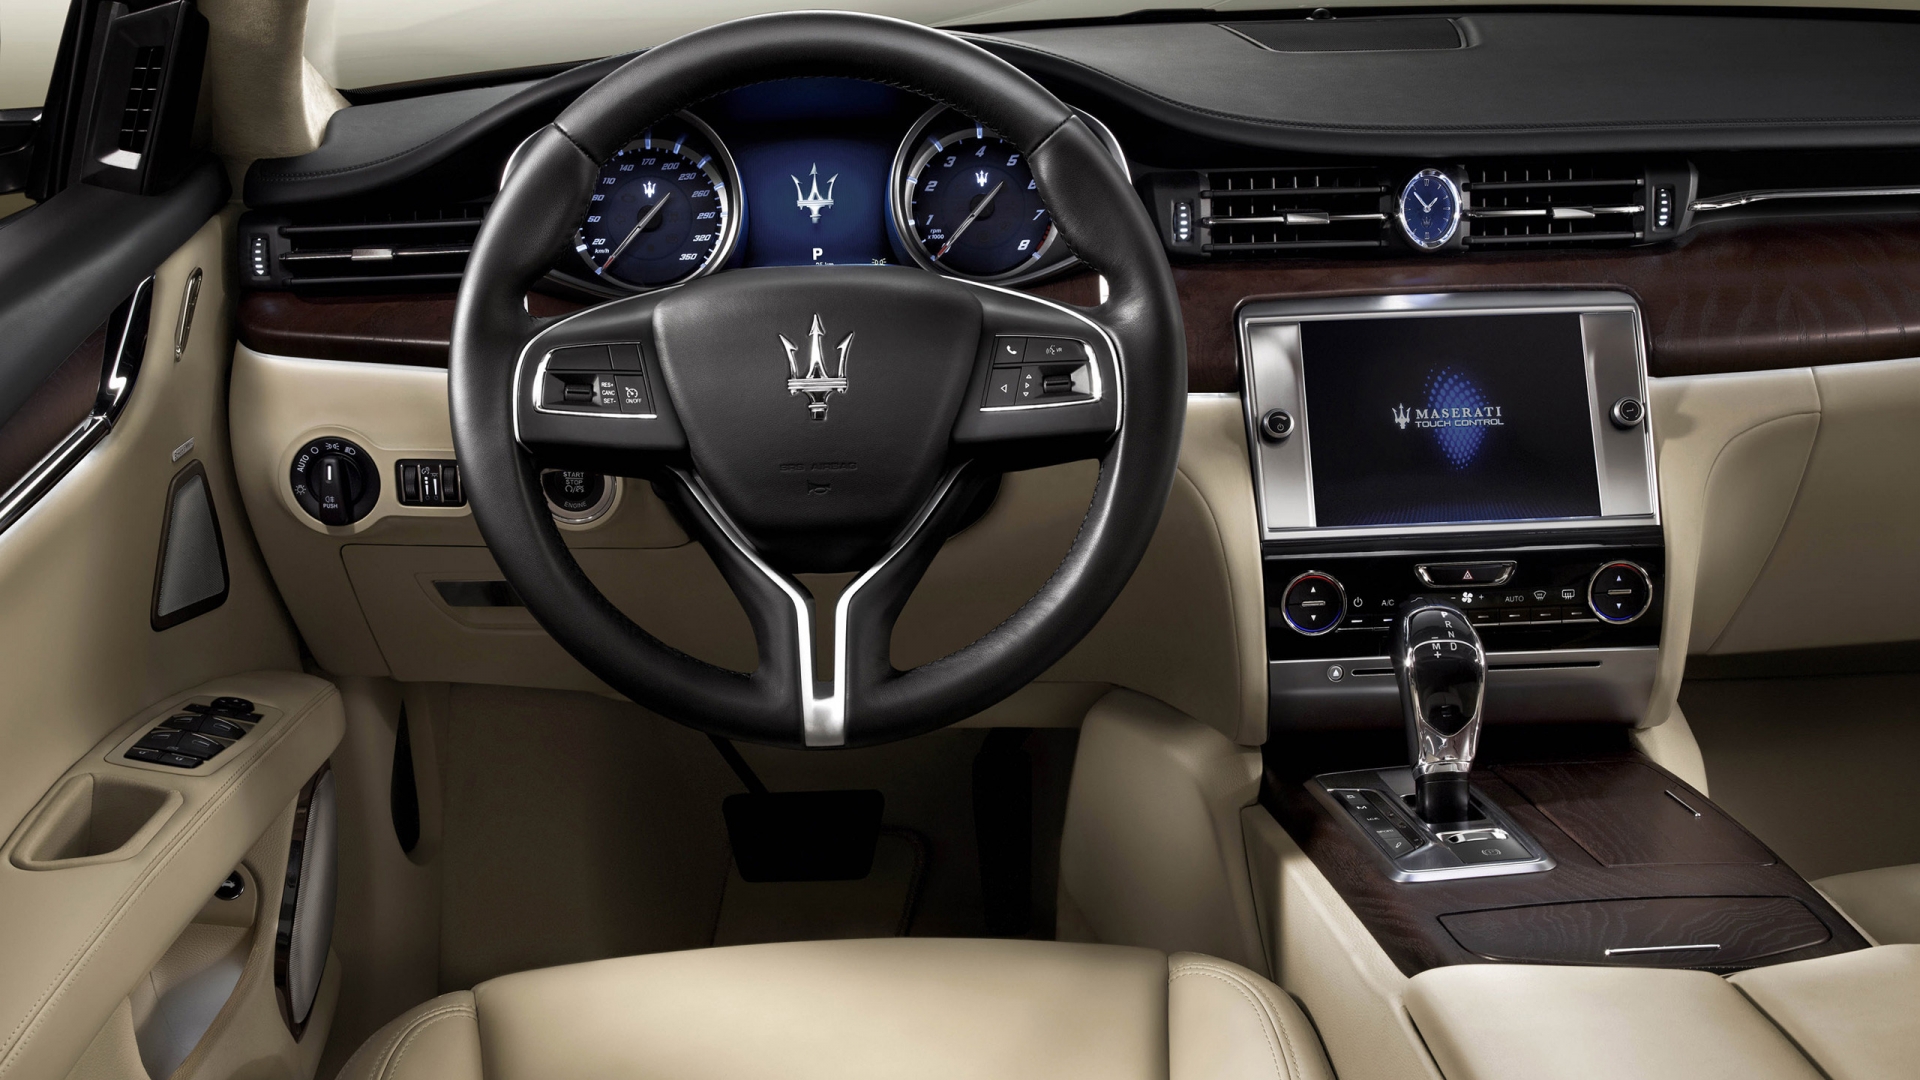 Interior of Maserati Quattroporte for 1920 x 1080 HDTV 1080p resolution